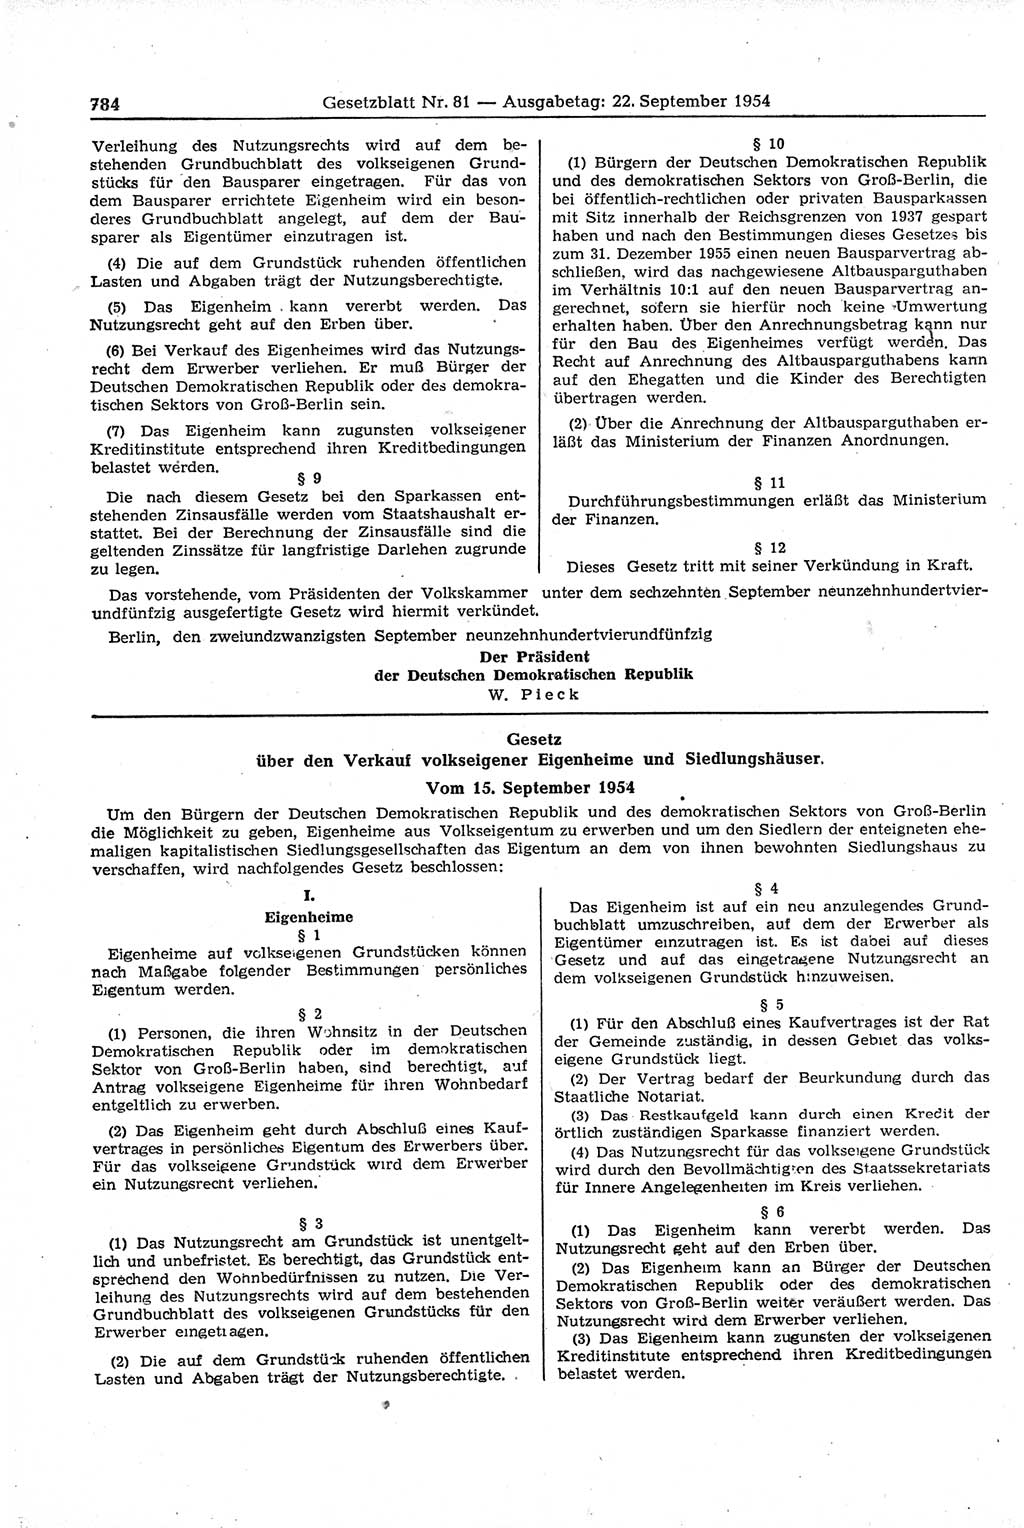 Gesetzblatt (GBl.) der Deutschen Demokratischen Republik (DDR) 1954, Seite 784 (GBl. DDR 1954, S. 784)